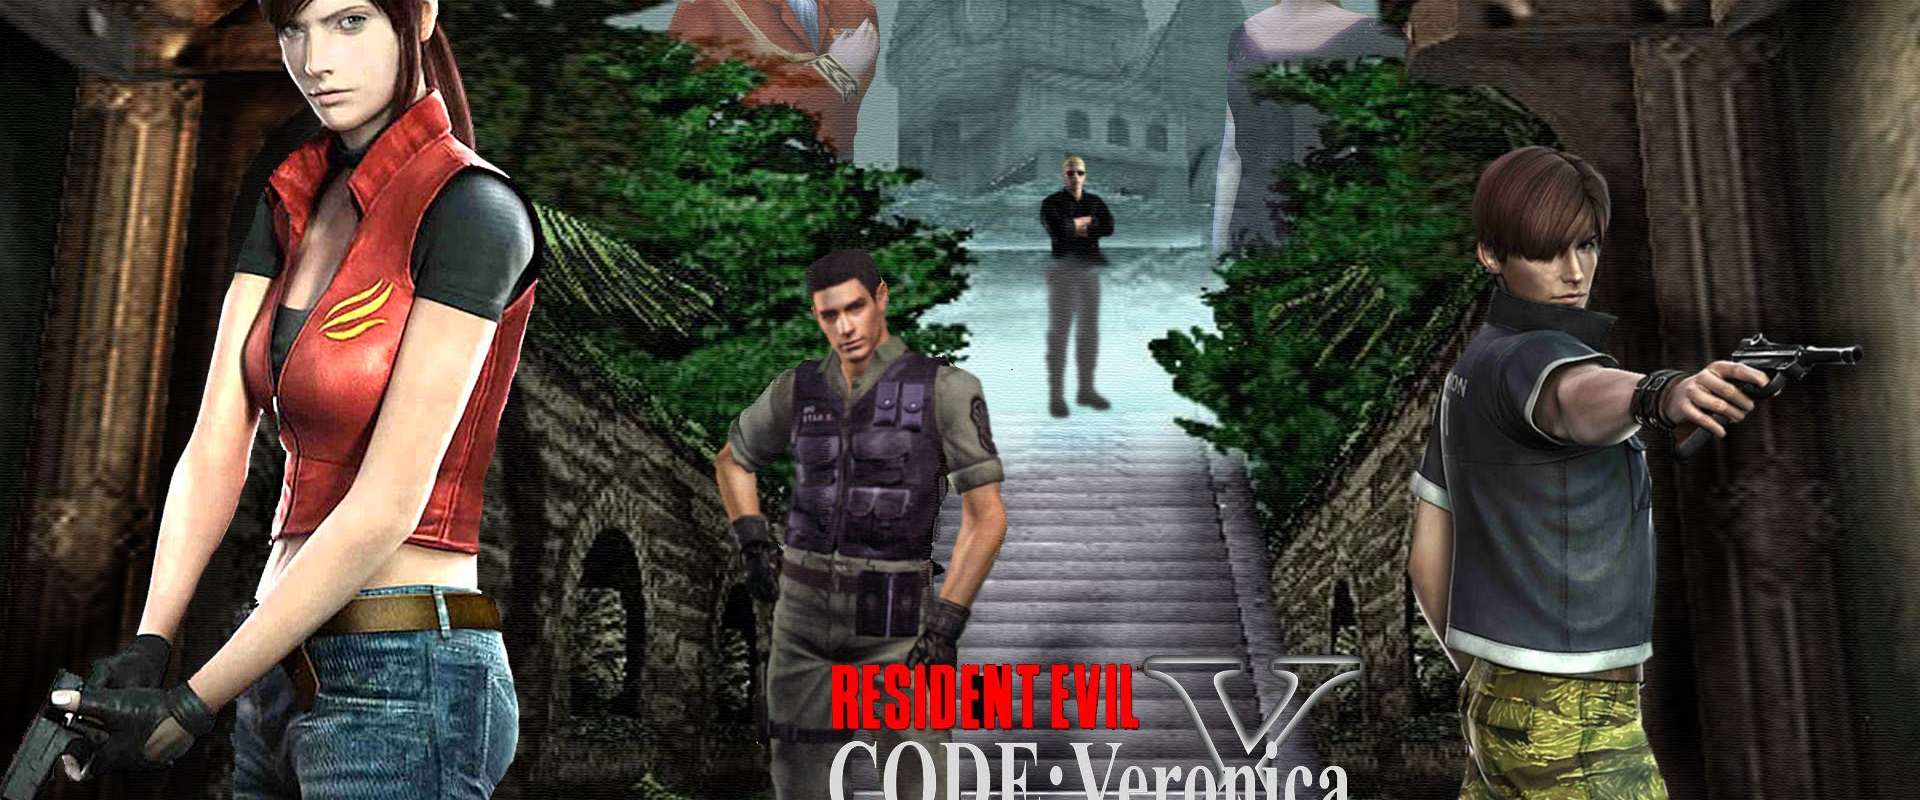 Jogo Resident Evil Code: Veronica - DreamCast (Japonês